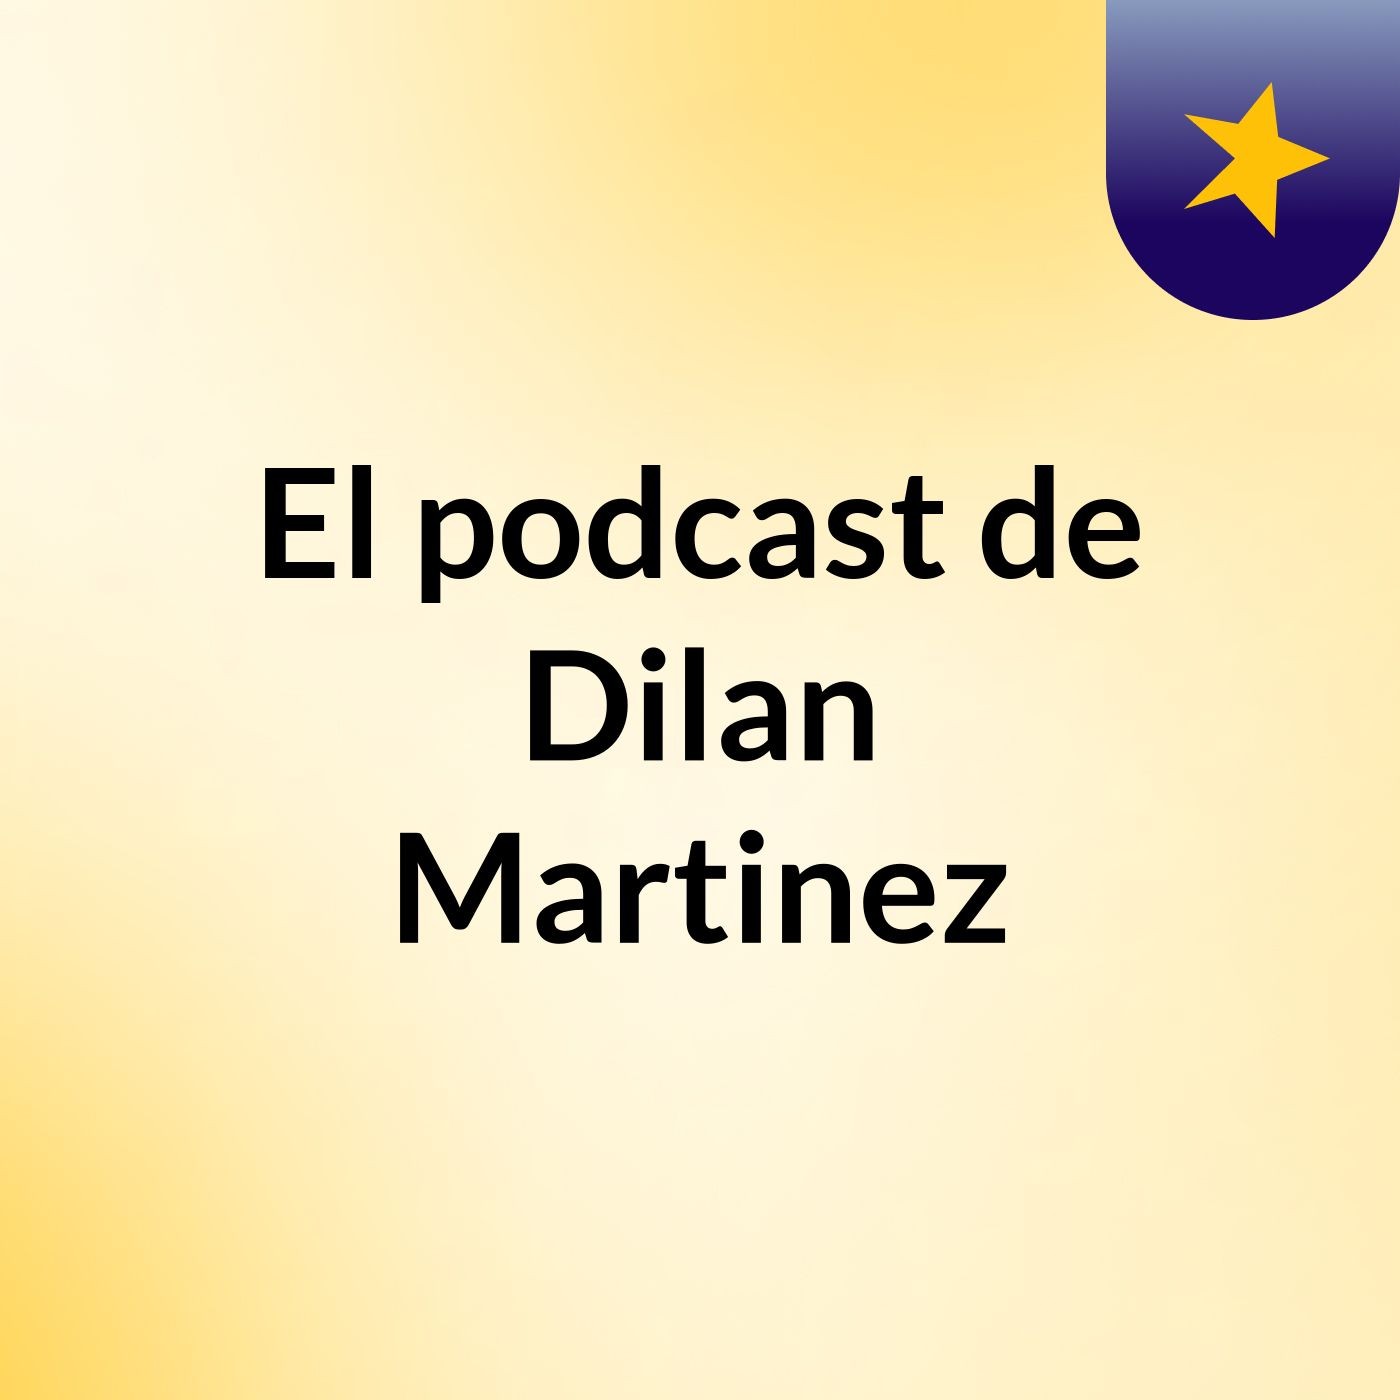 El podcast de Dilan Martinez